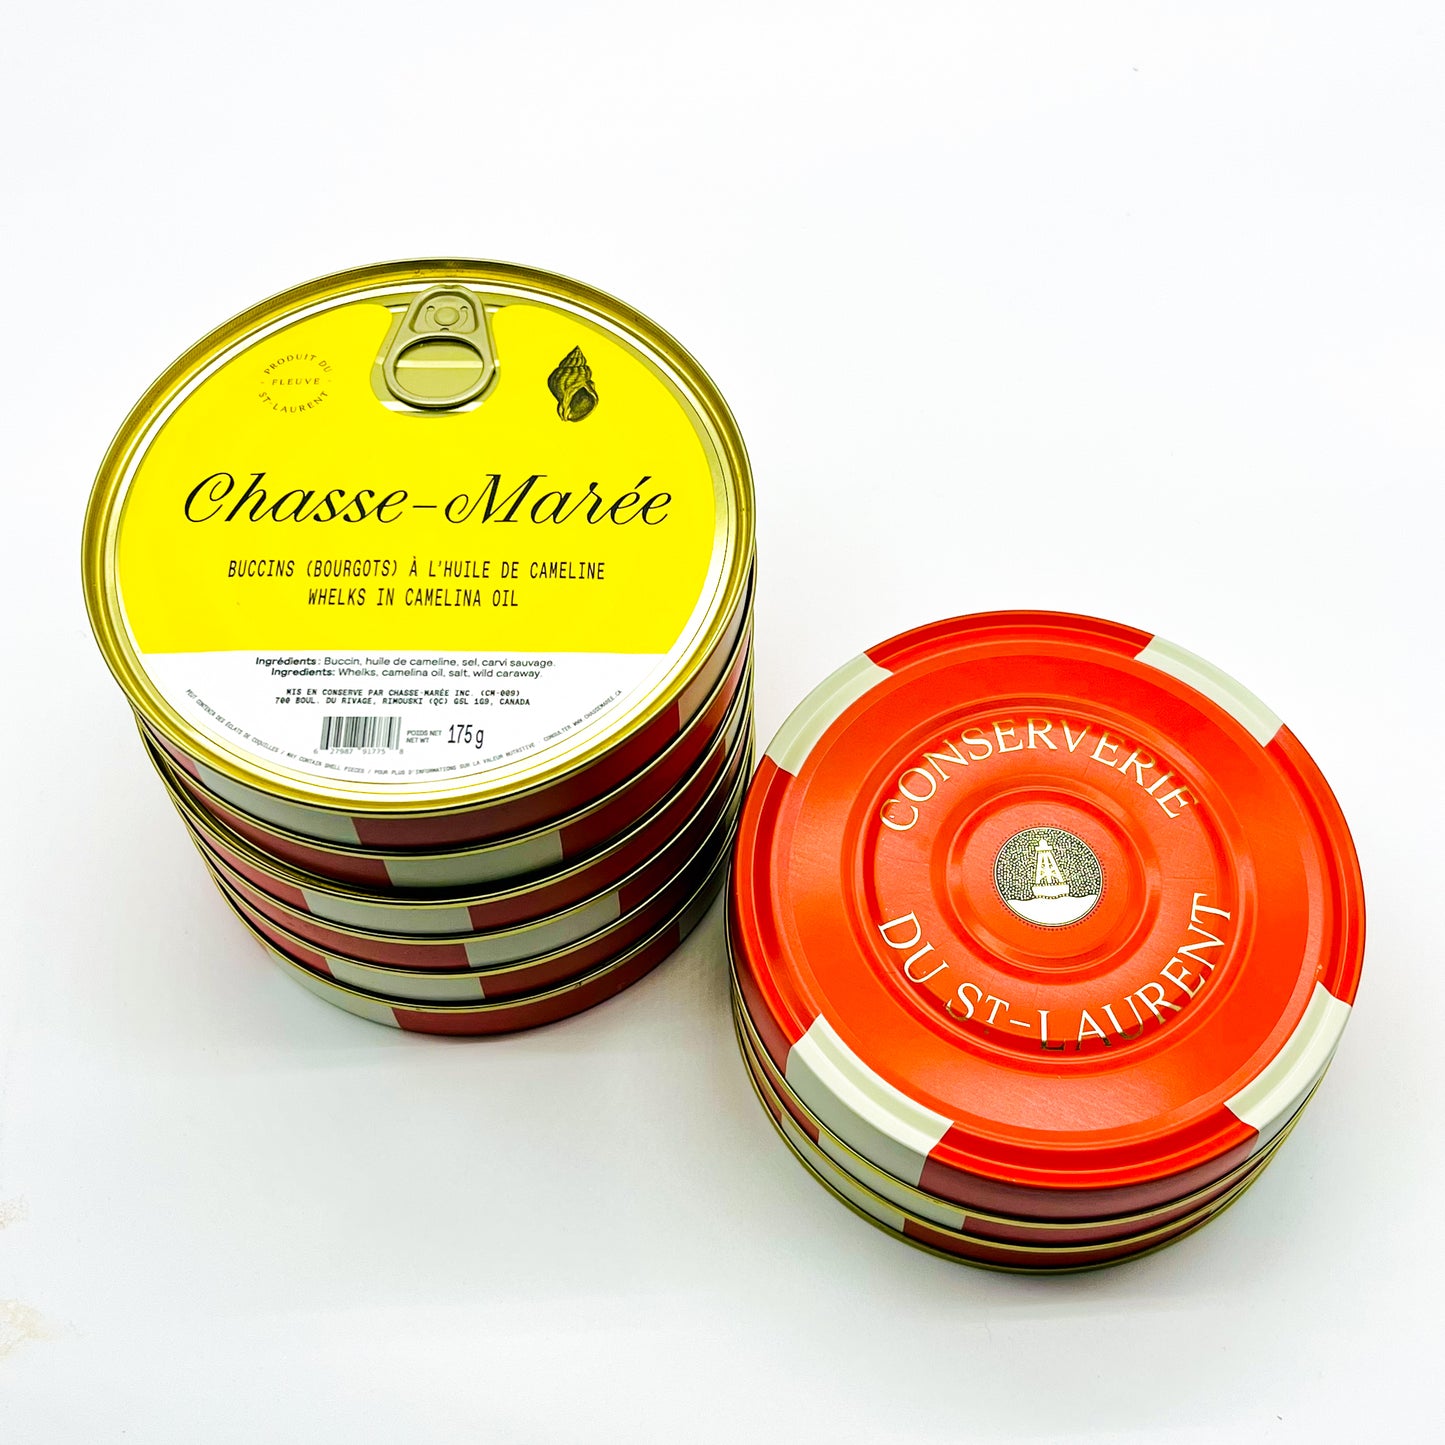 Des conserves de bourgots à l'huile de cameline de Chasse-Marée, entreprise locale de Rimouski qui propose des produits de la mer issus de la pêche durable et pêchés au Québec, dans le fleuve Saint-Laurent.